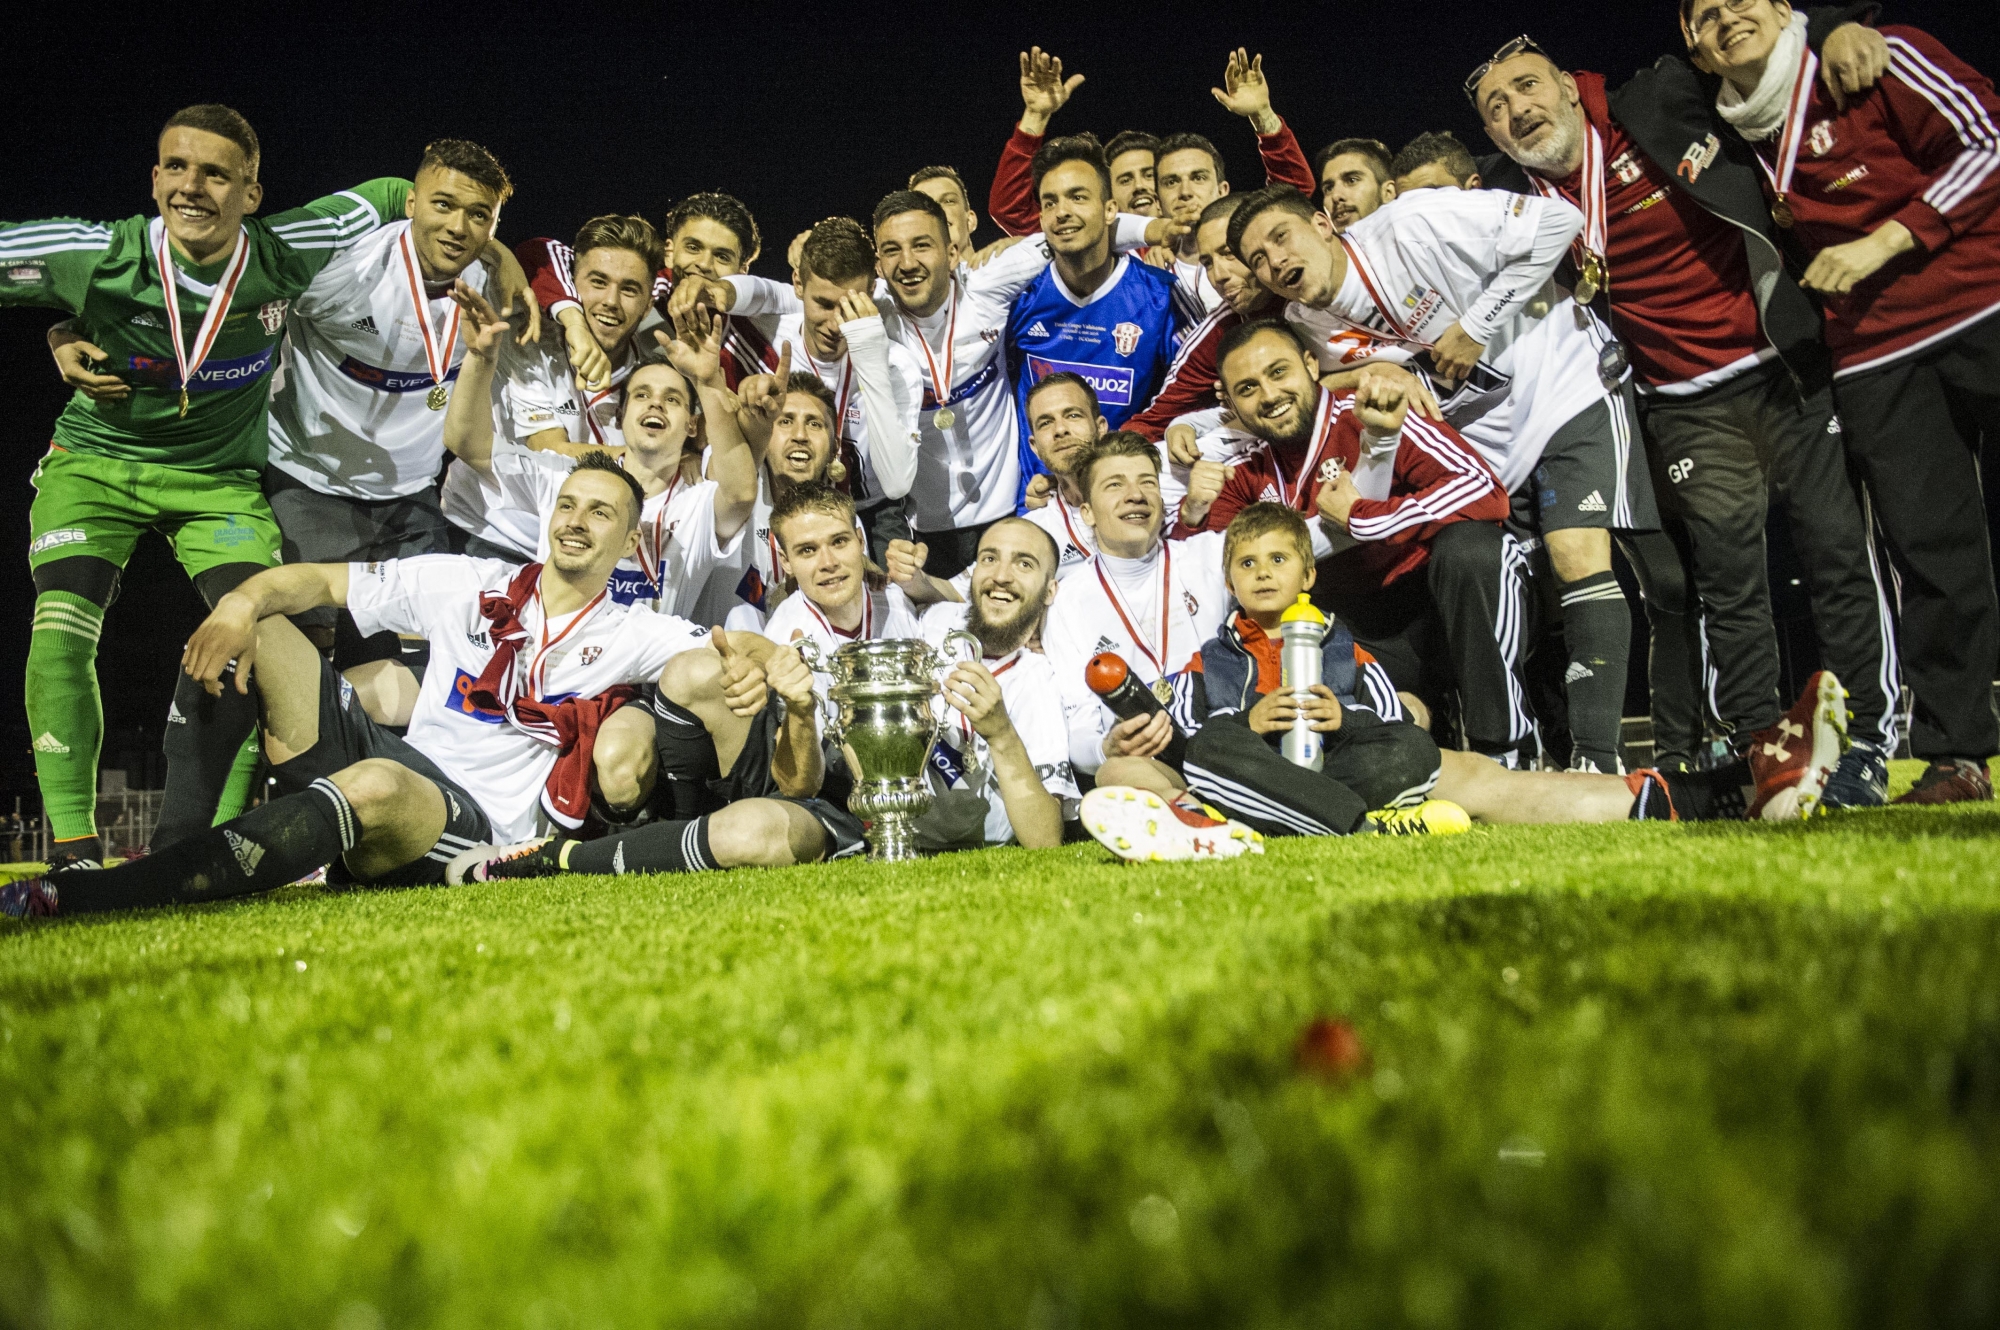 Mai 2016: le FC Conthey remporte la Coupe valaisanne. Moins d'une année après avoir été sacré champion de 2e ligue et promu en 2e ligue interrégionale.